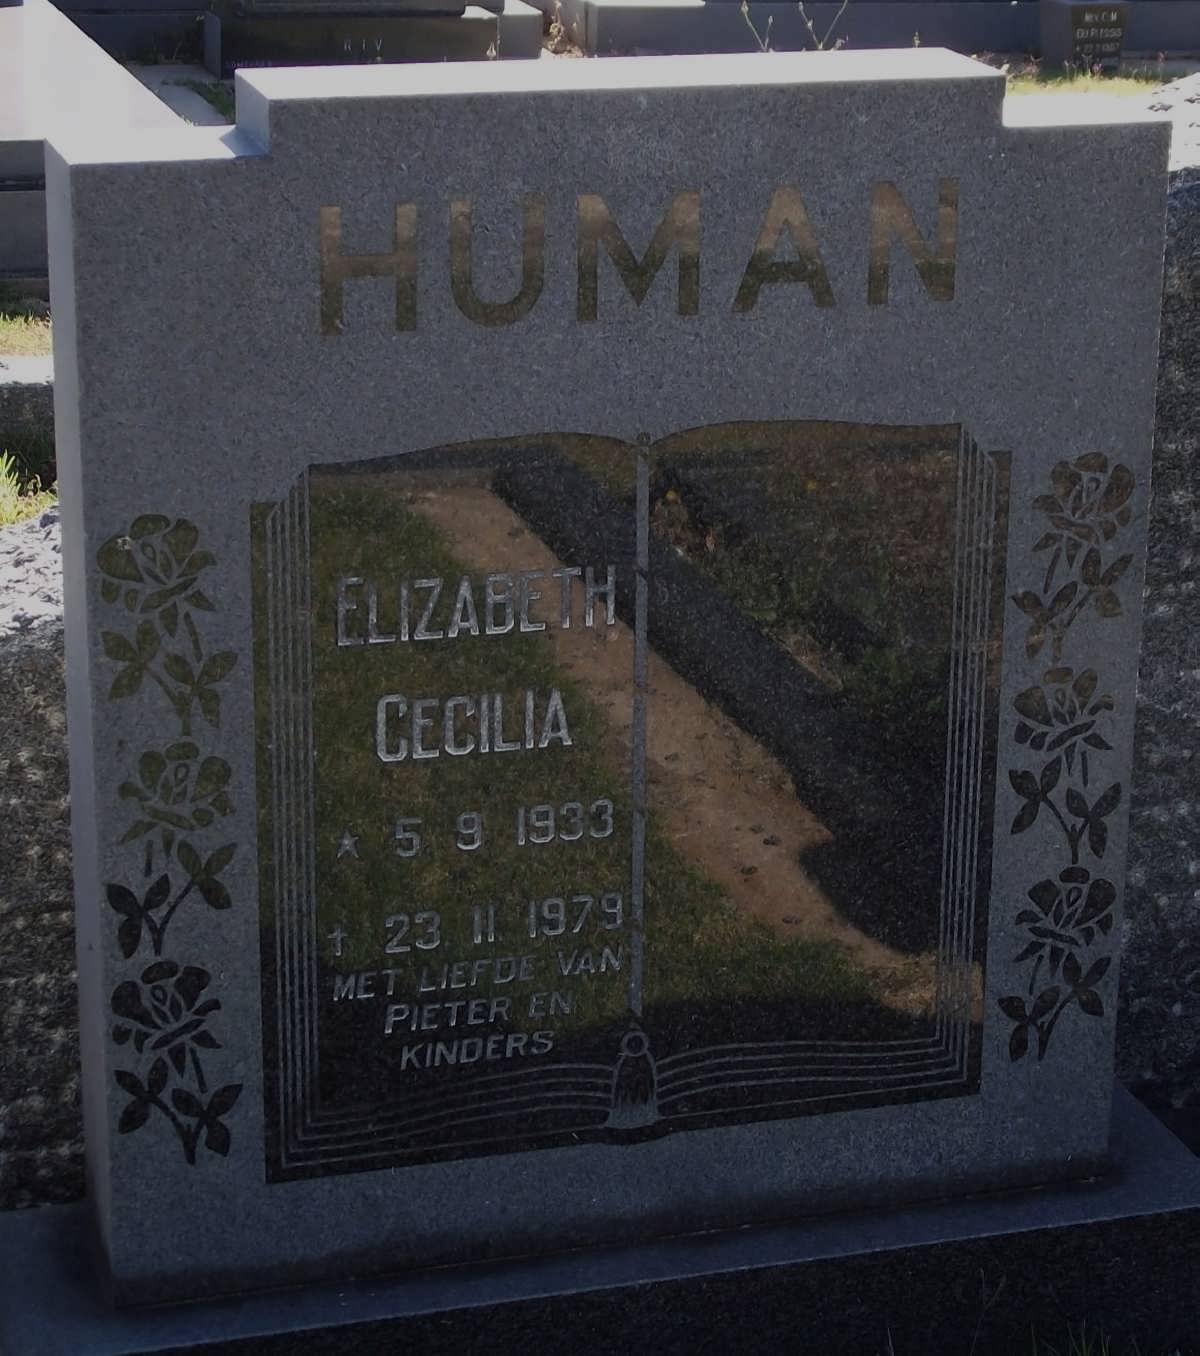 HUMAN Elizabeth Cecilia 1933-1979